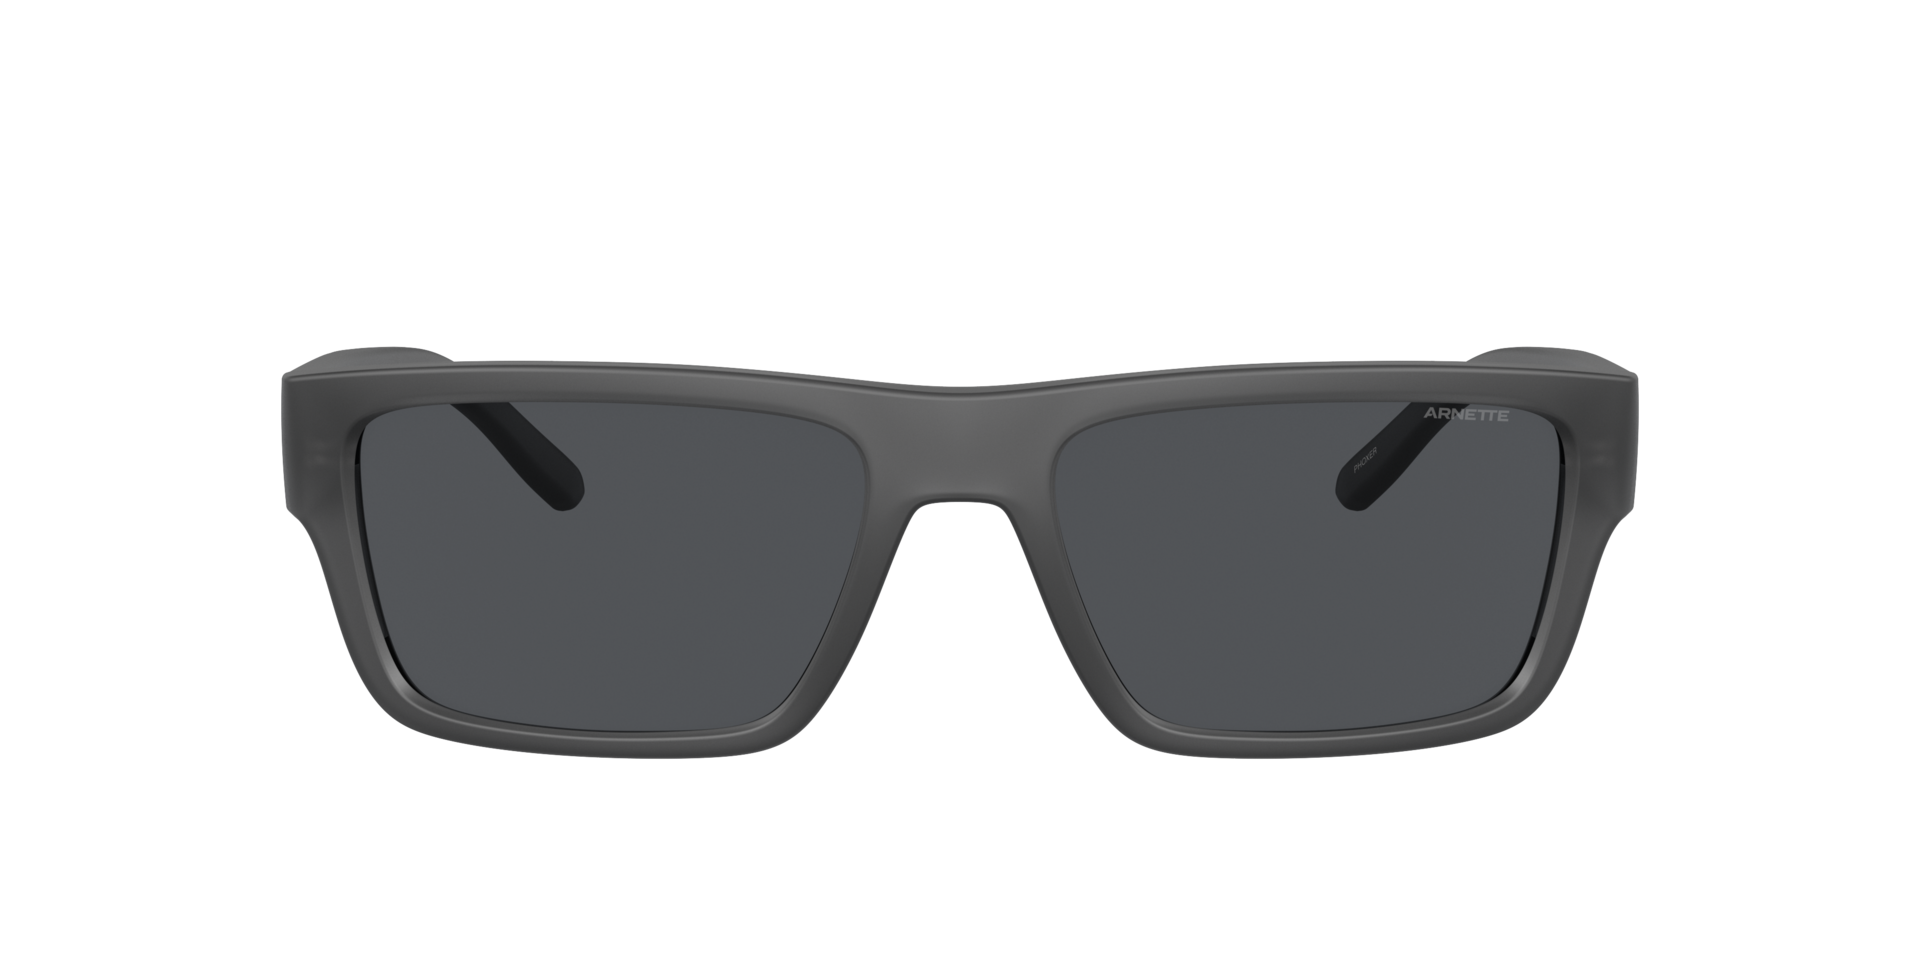 Das Bild zeigt die Sonnenbrille AN4338 278687 von der Marke Arnette in schwarz.